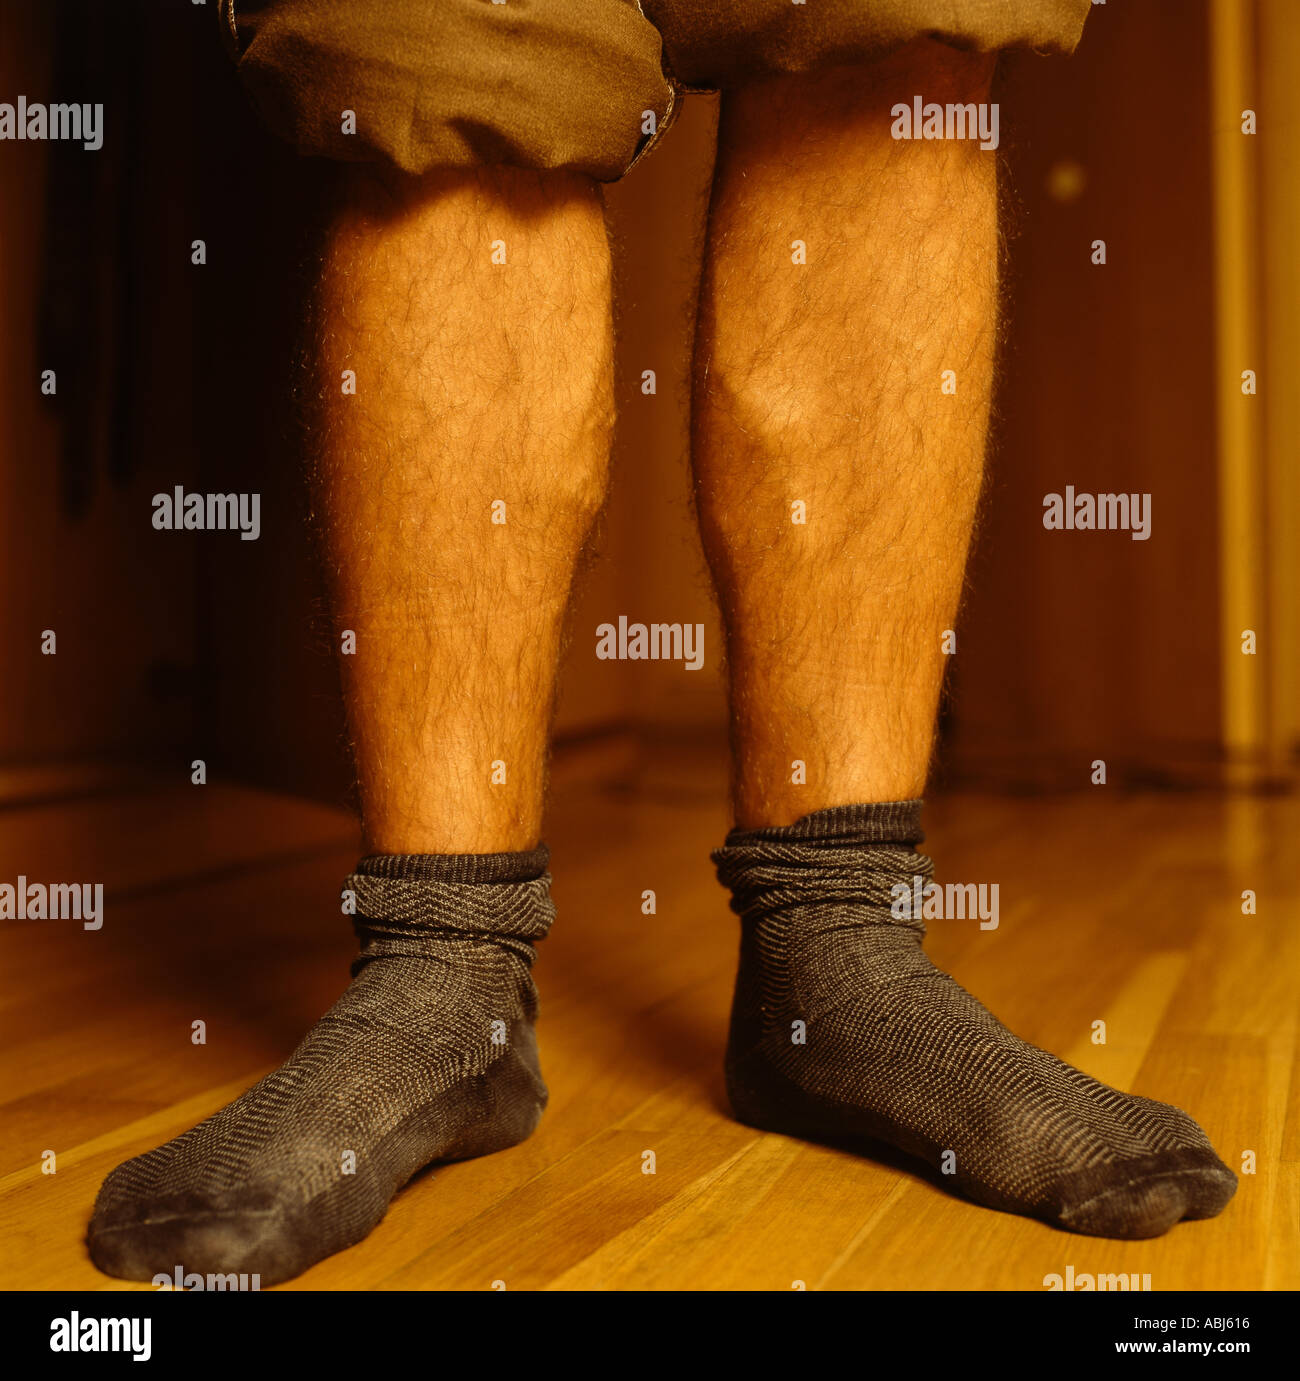 Chaussettes homme portant avec un pantalon retroussé Photo Stock - Alamy